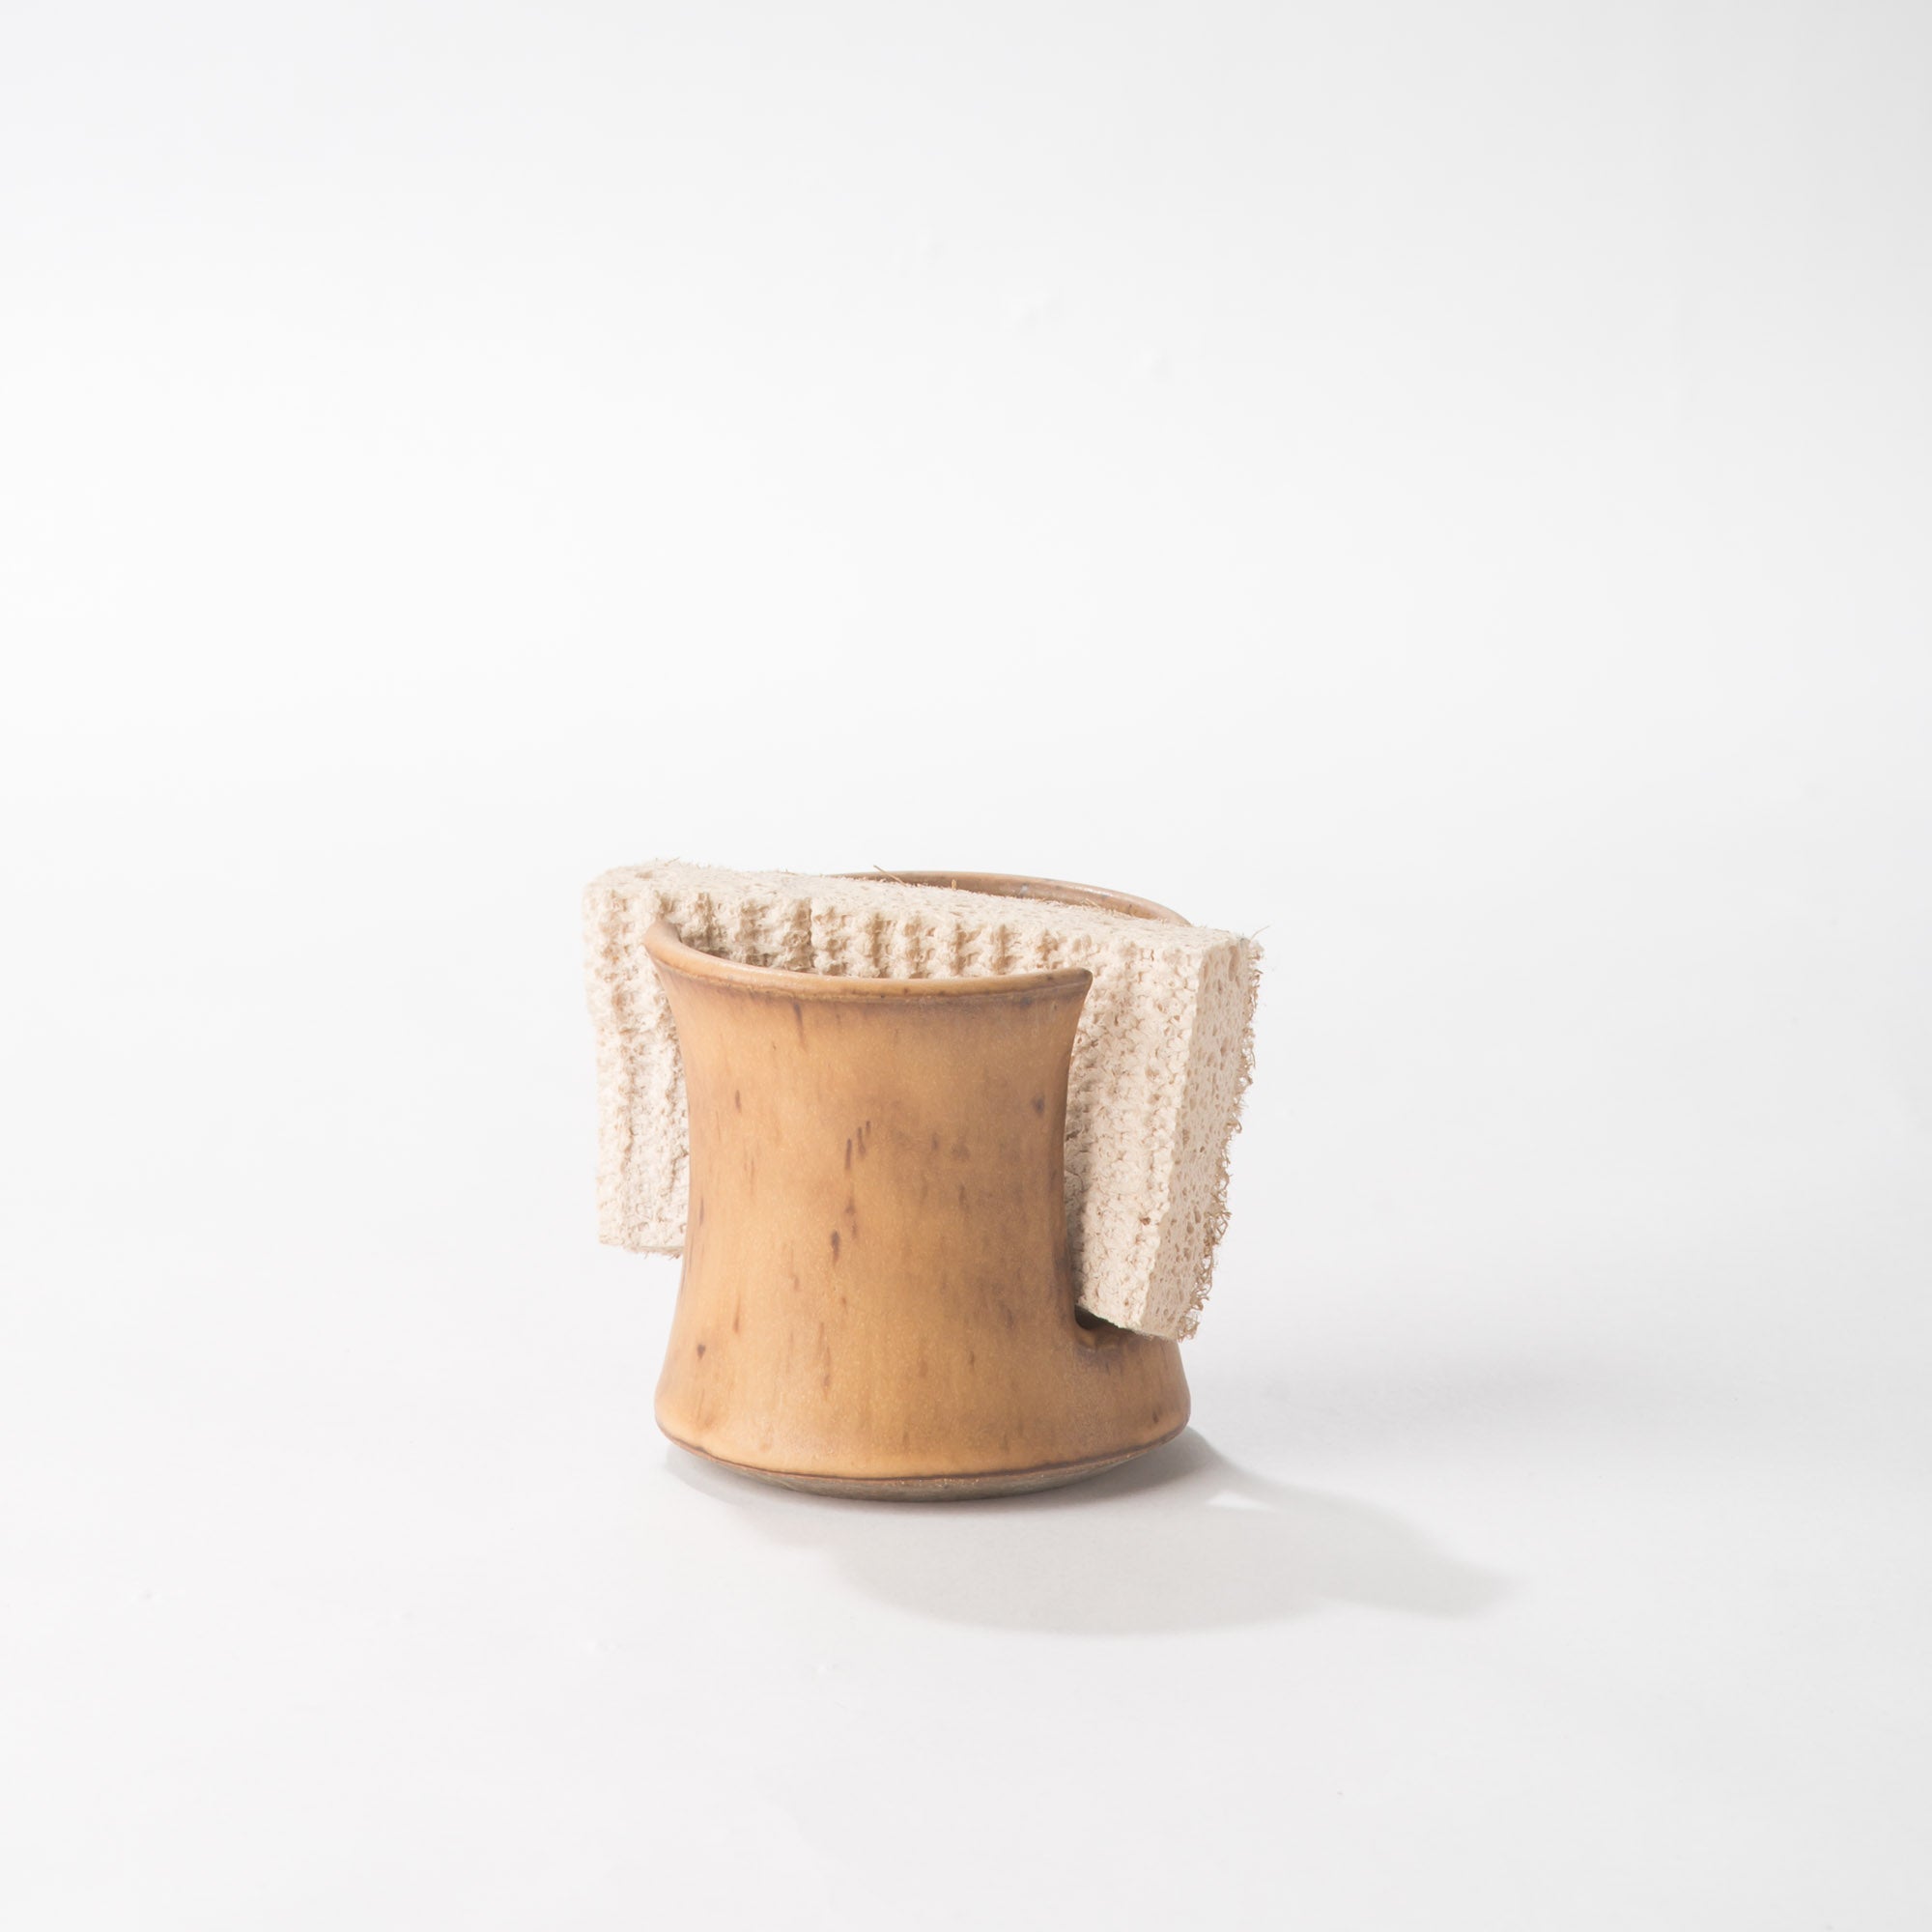 Napkin/Sponge Holder - Household - Handmade - Mountain Arts Pottery